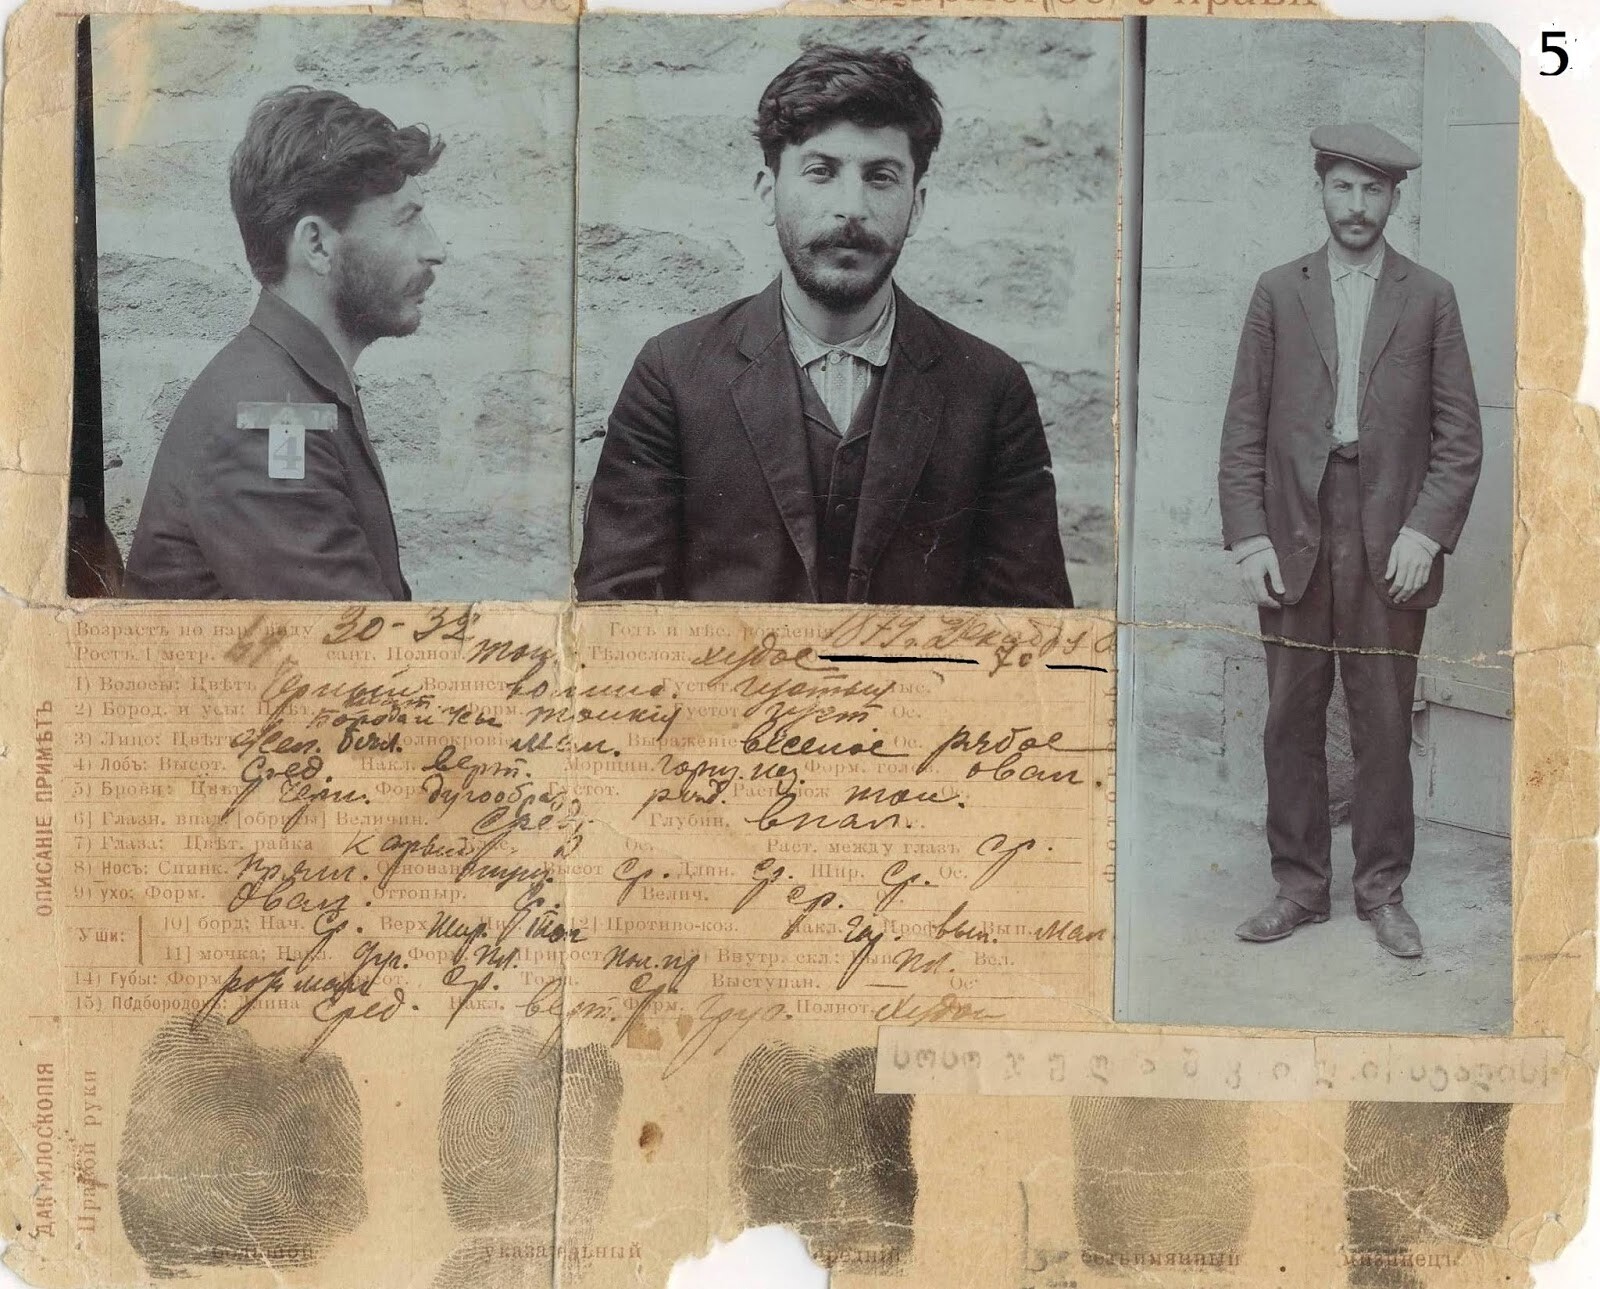 Kopija kazenskega dokumenta za gruzijsko policijo v Tbilisiju, ki ga je ustvarila policija Ruskega imperija v Bakuju po Stalinovi aretaciji leta 1910. 